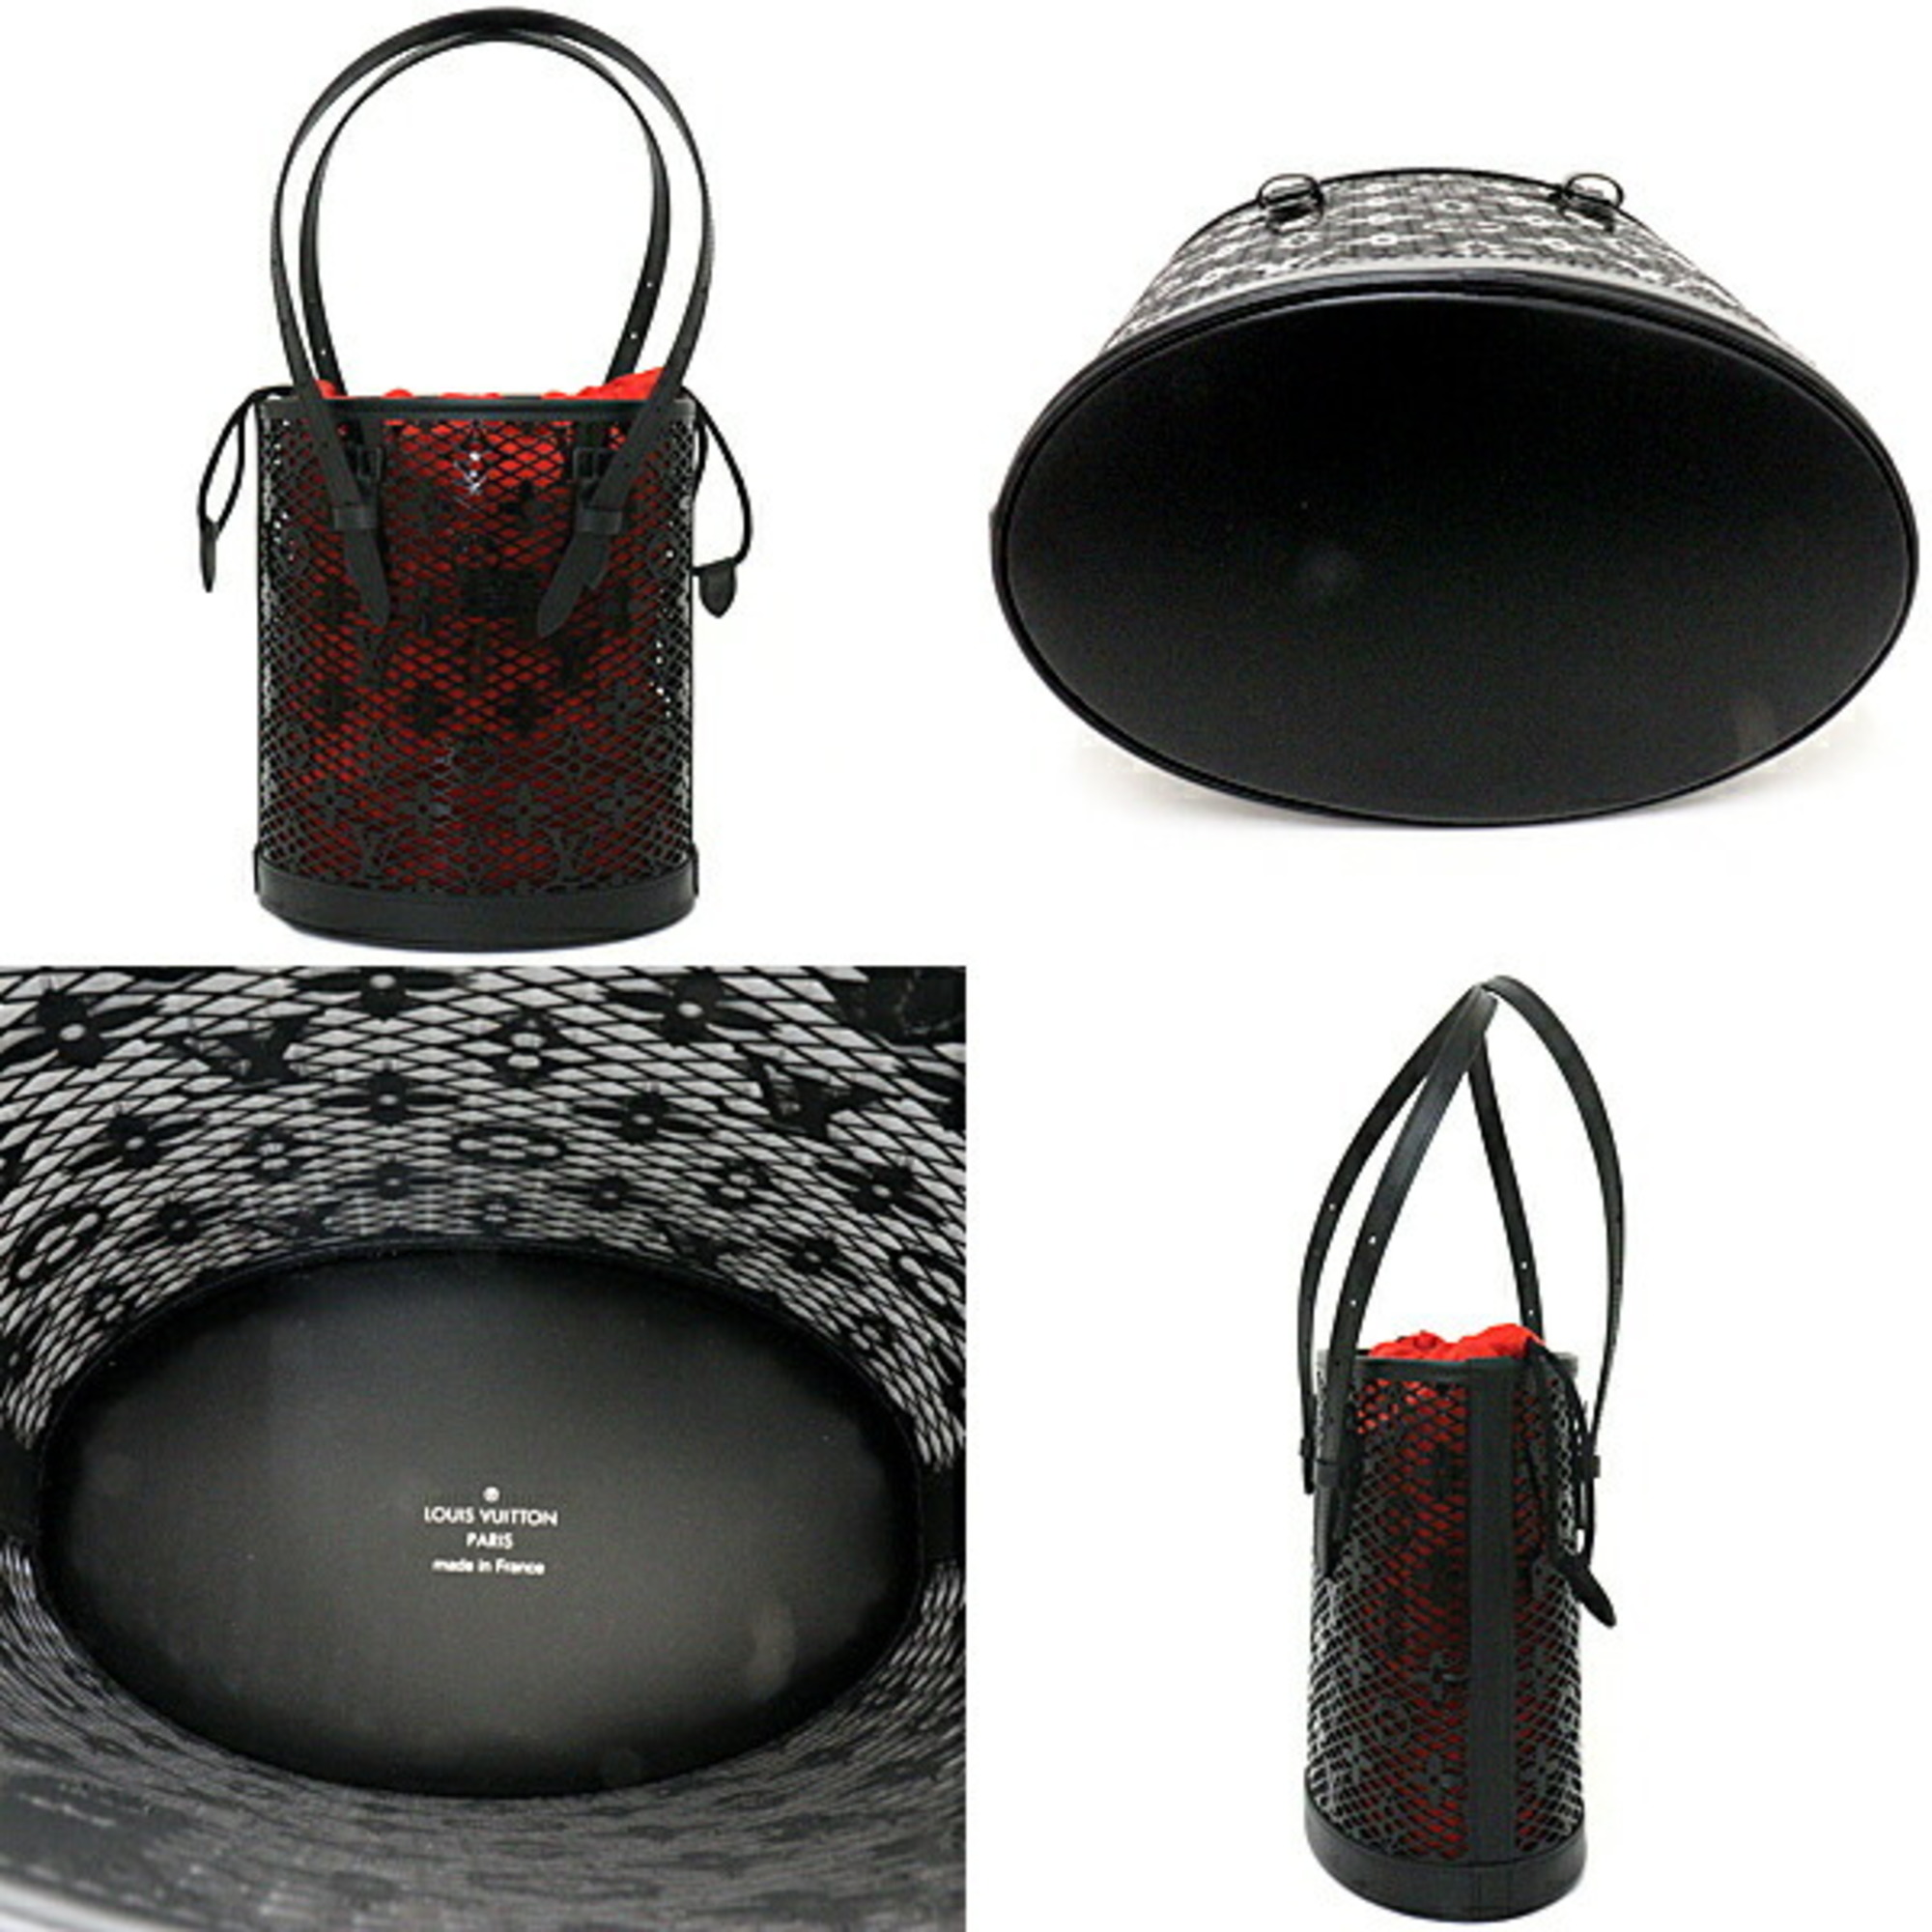 LOUIS VUITTON Louis Vuitton Bucket PM Shoulder Bag Handbag Monogram Lace Leather Patent Calf N20352 Black Red Hardware